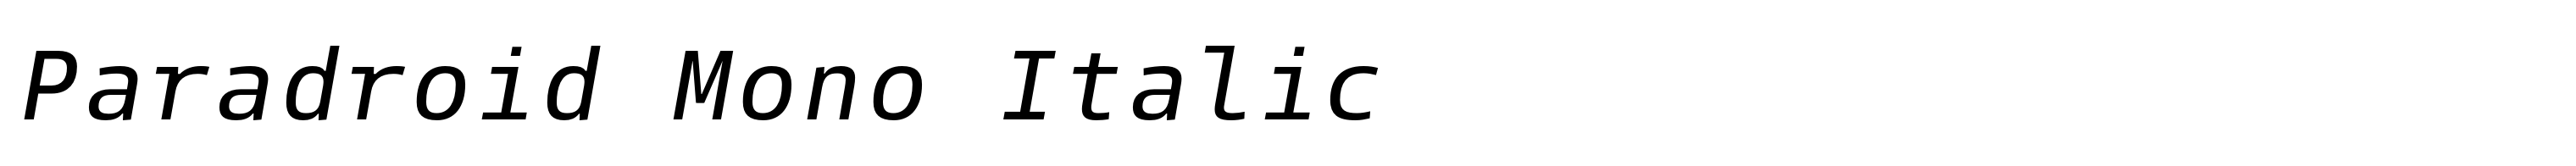 Paradroid Mono Italic